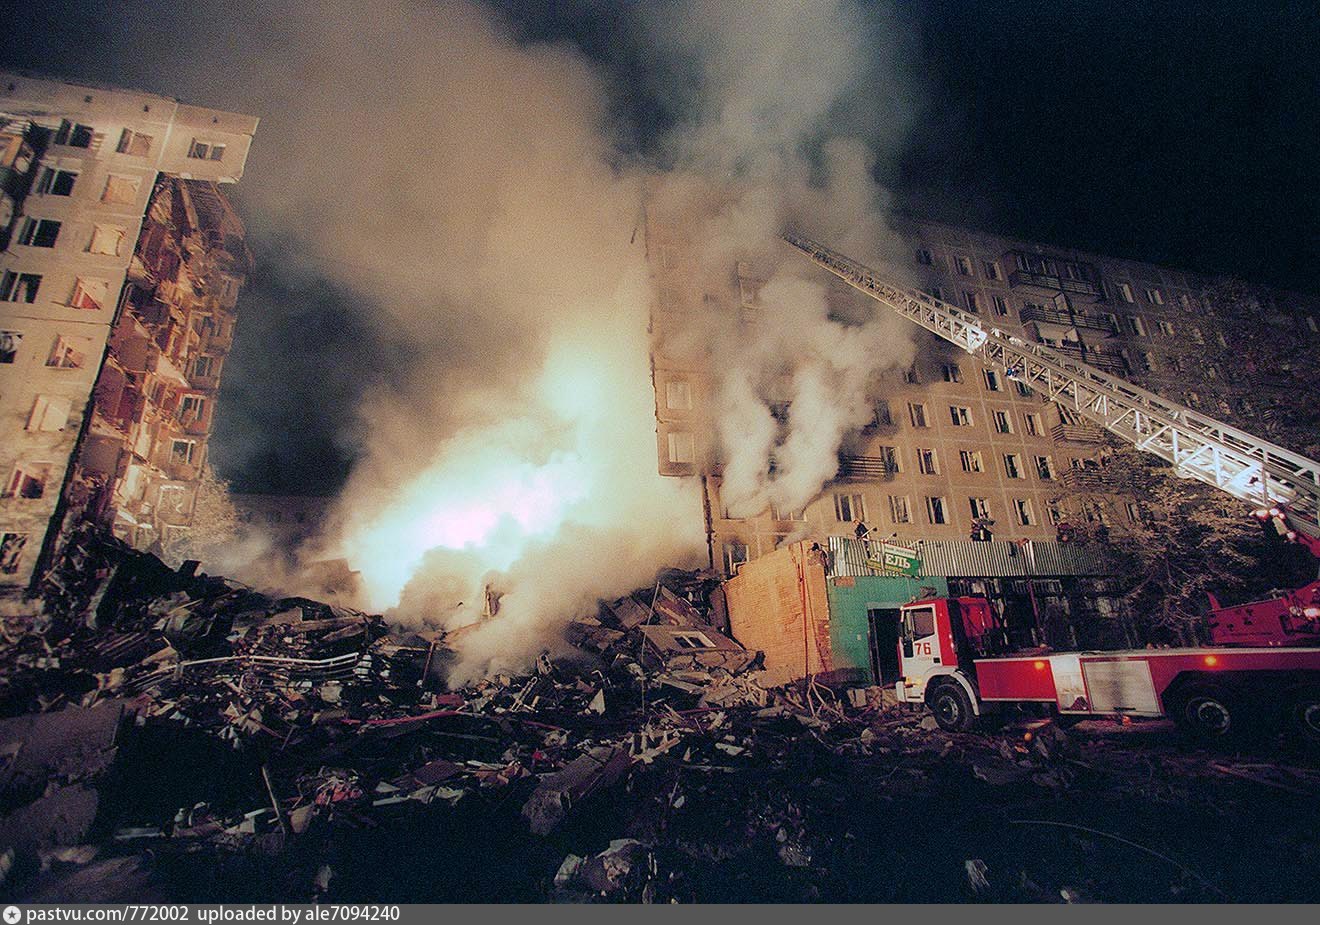 Какие дома взорвали в москве. Взрыв в Москве 1999 на улице Гурьянова. Теракт на улице Гурьянова 1999. Взрыв дома на улице Гурьянова 1999.